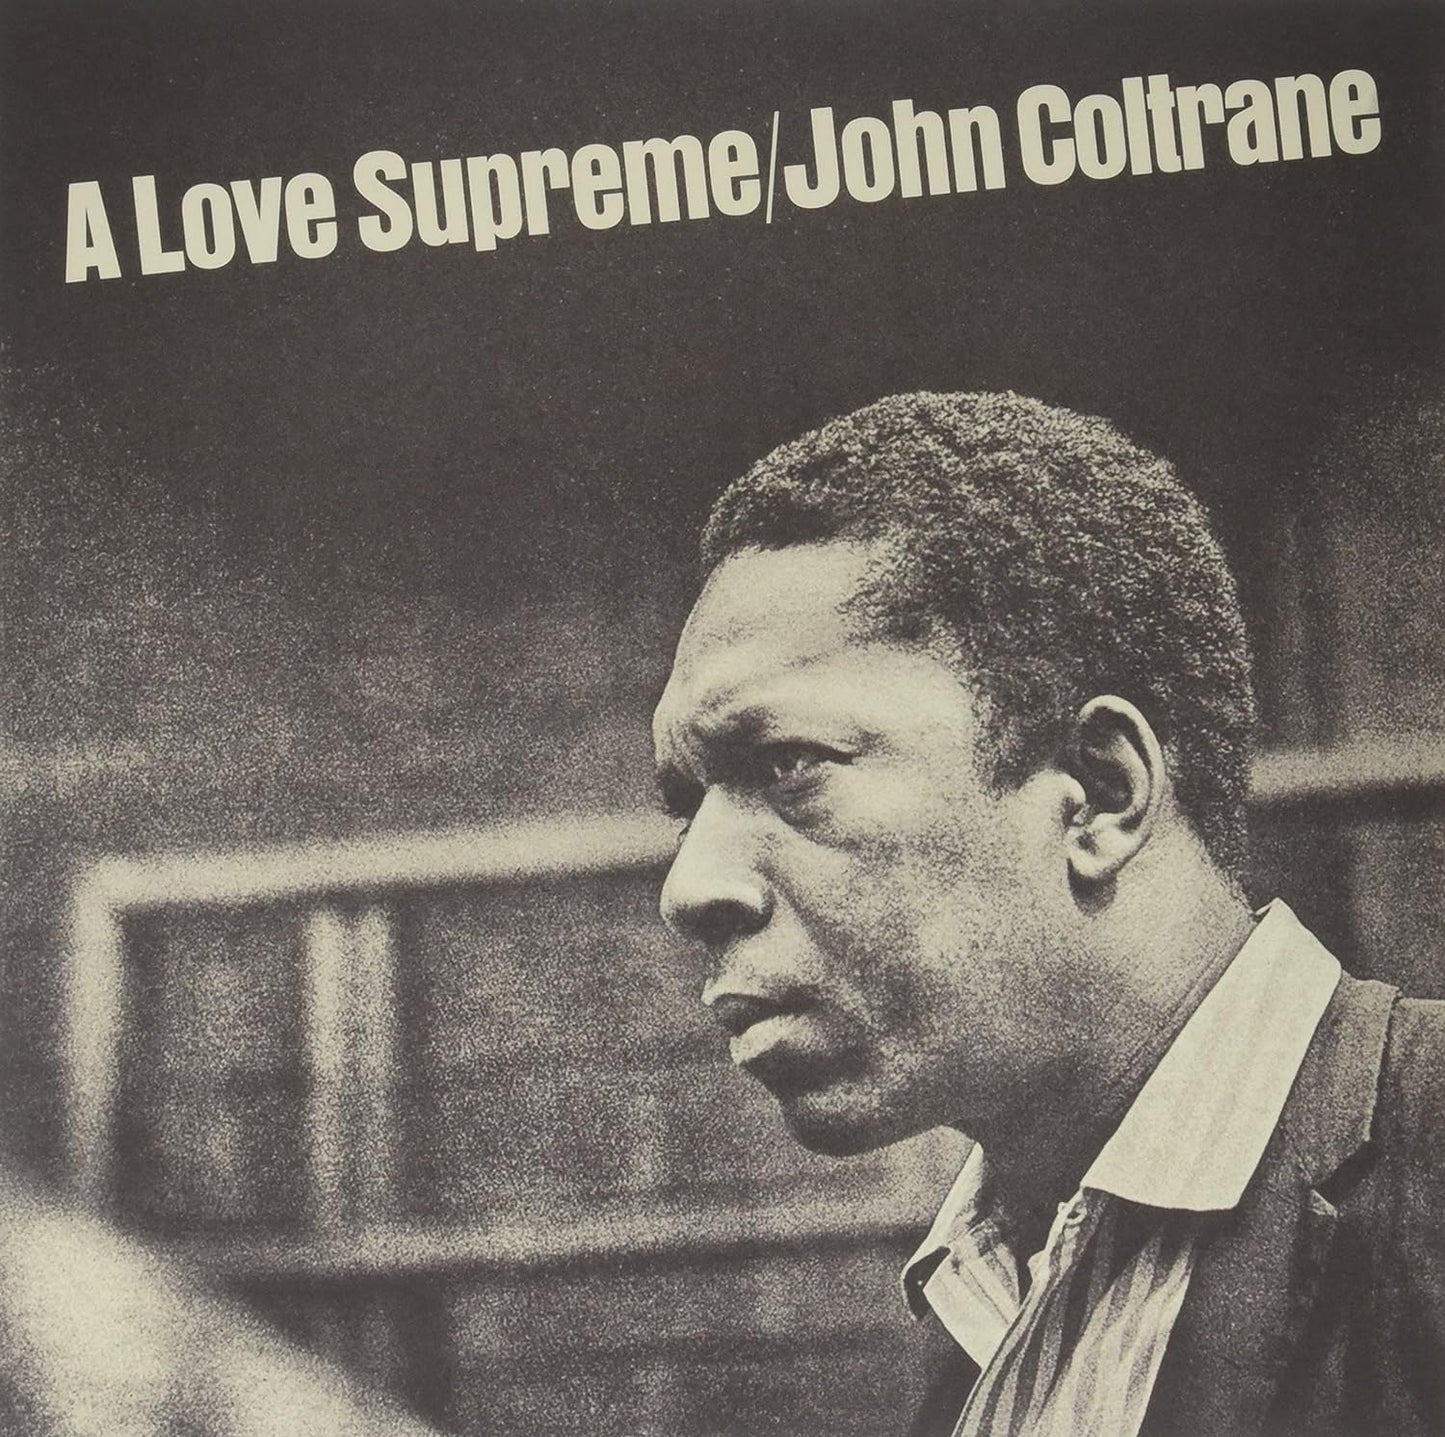 John Coltrane - A love supreme Live (Vinile 180gr.)